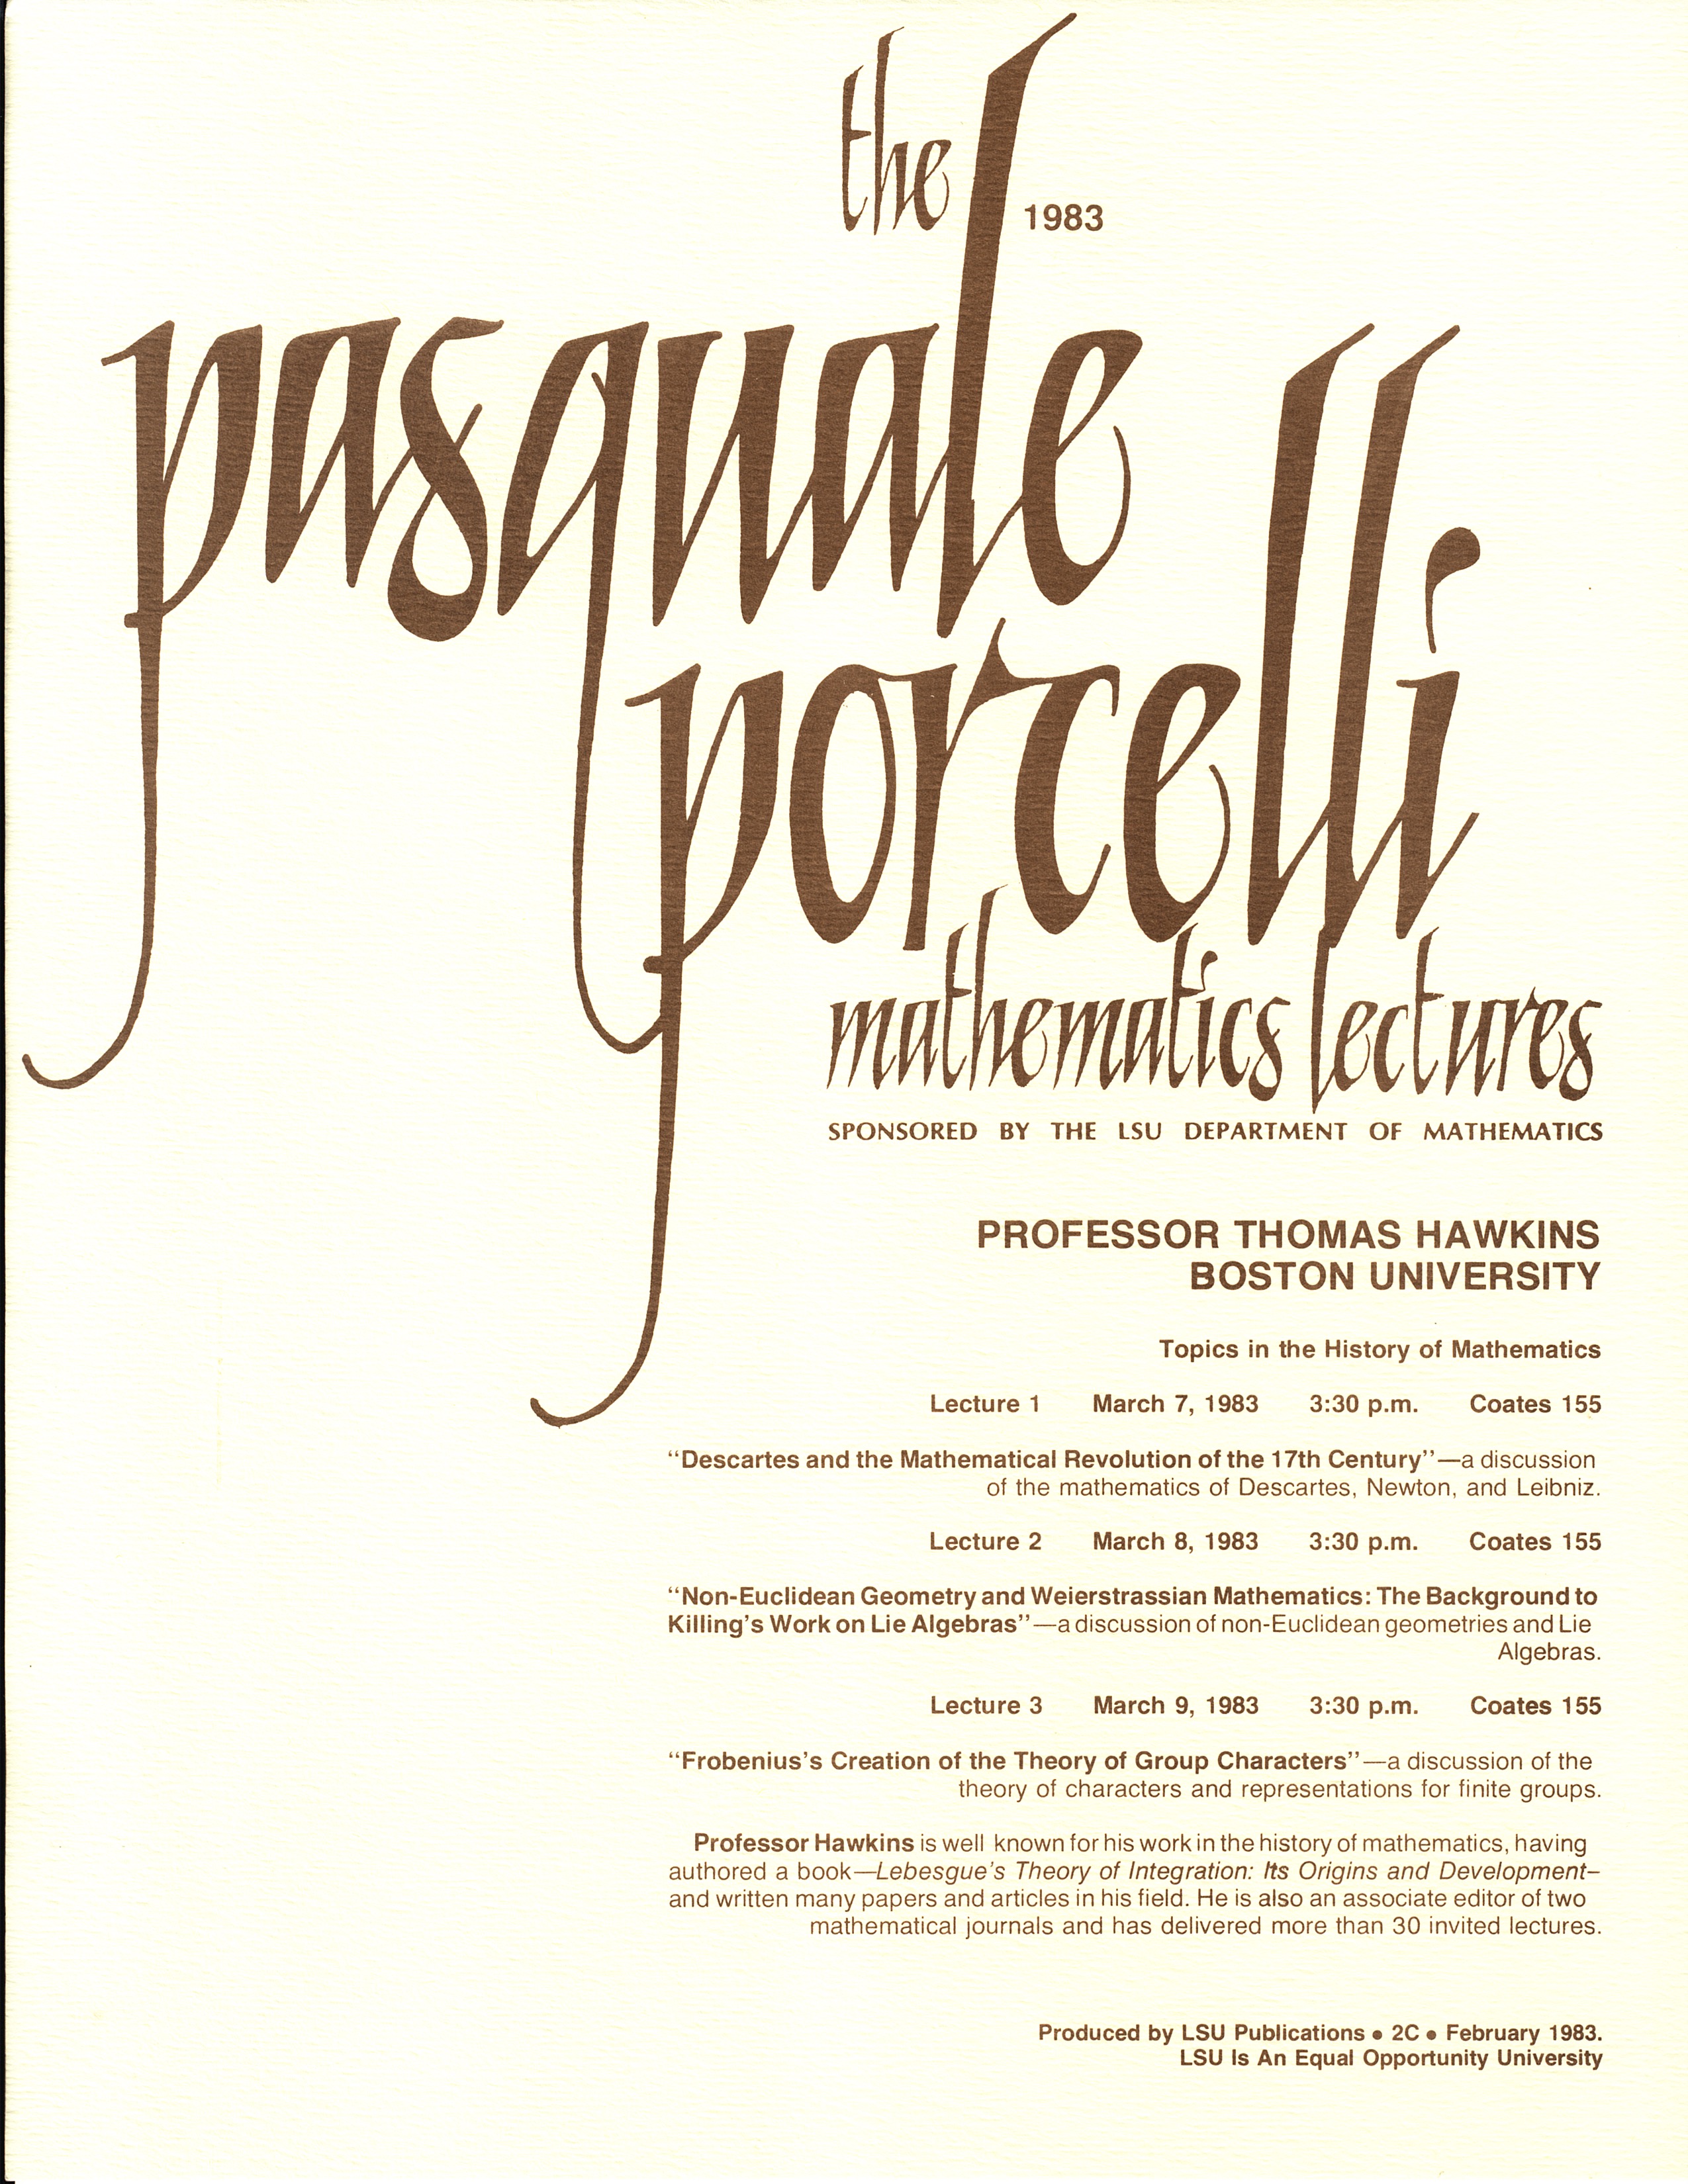 Porcelli Lecture Invitation: Thomas Hawkins 1983